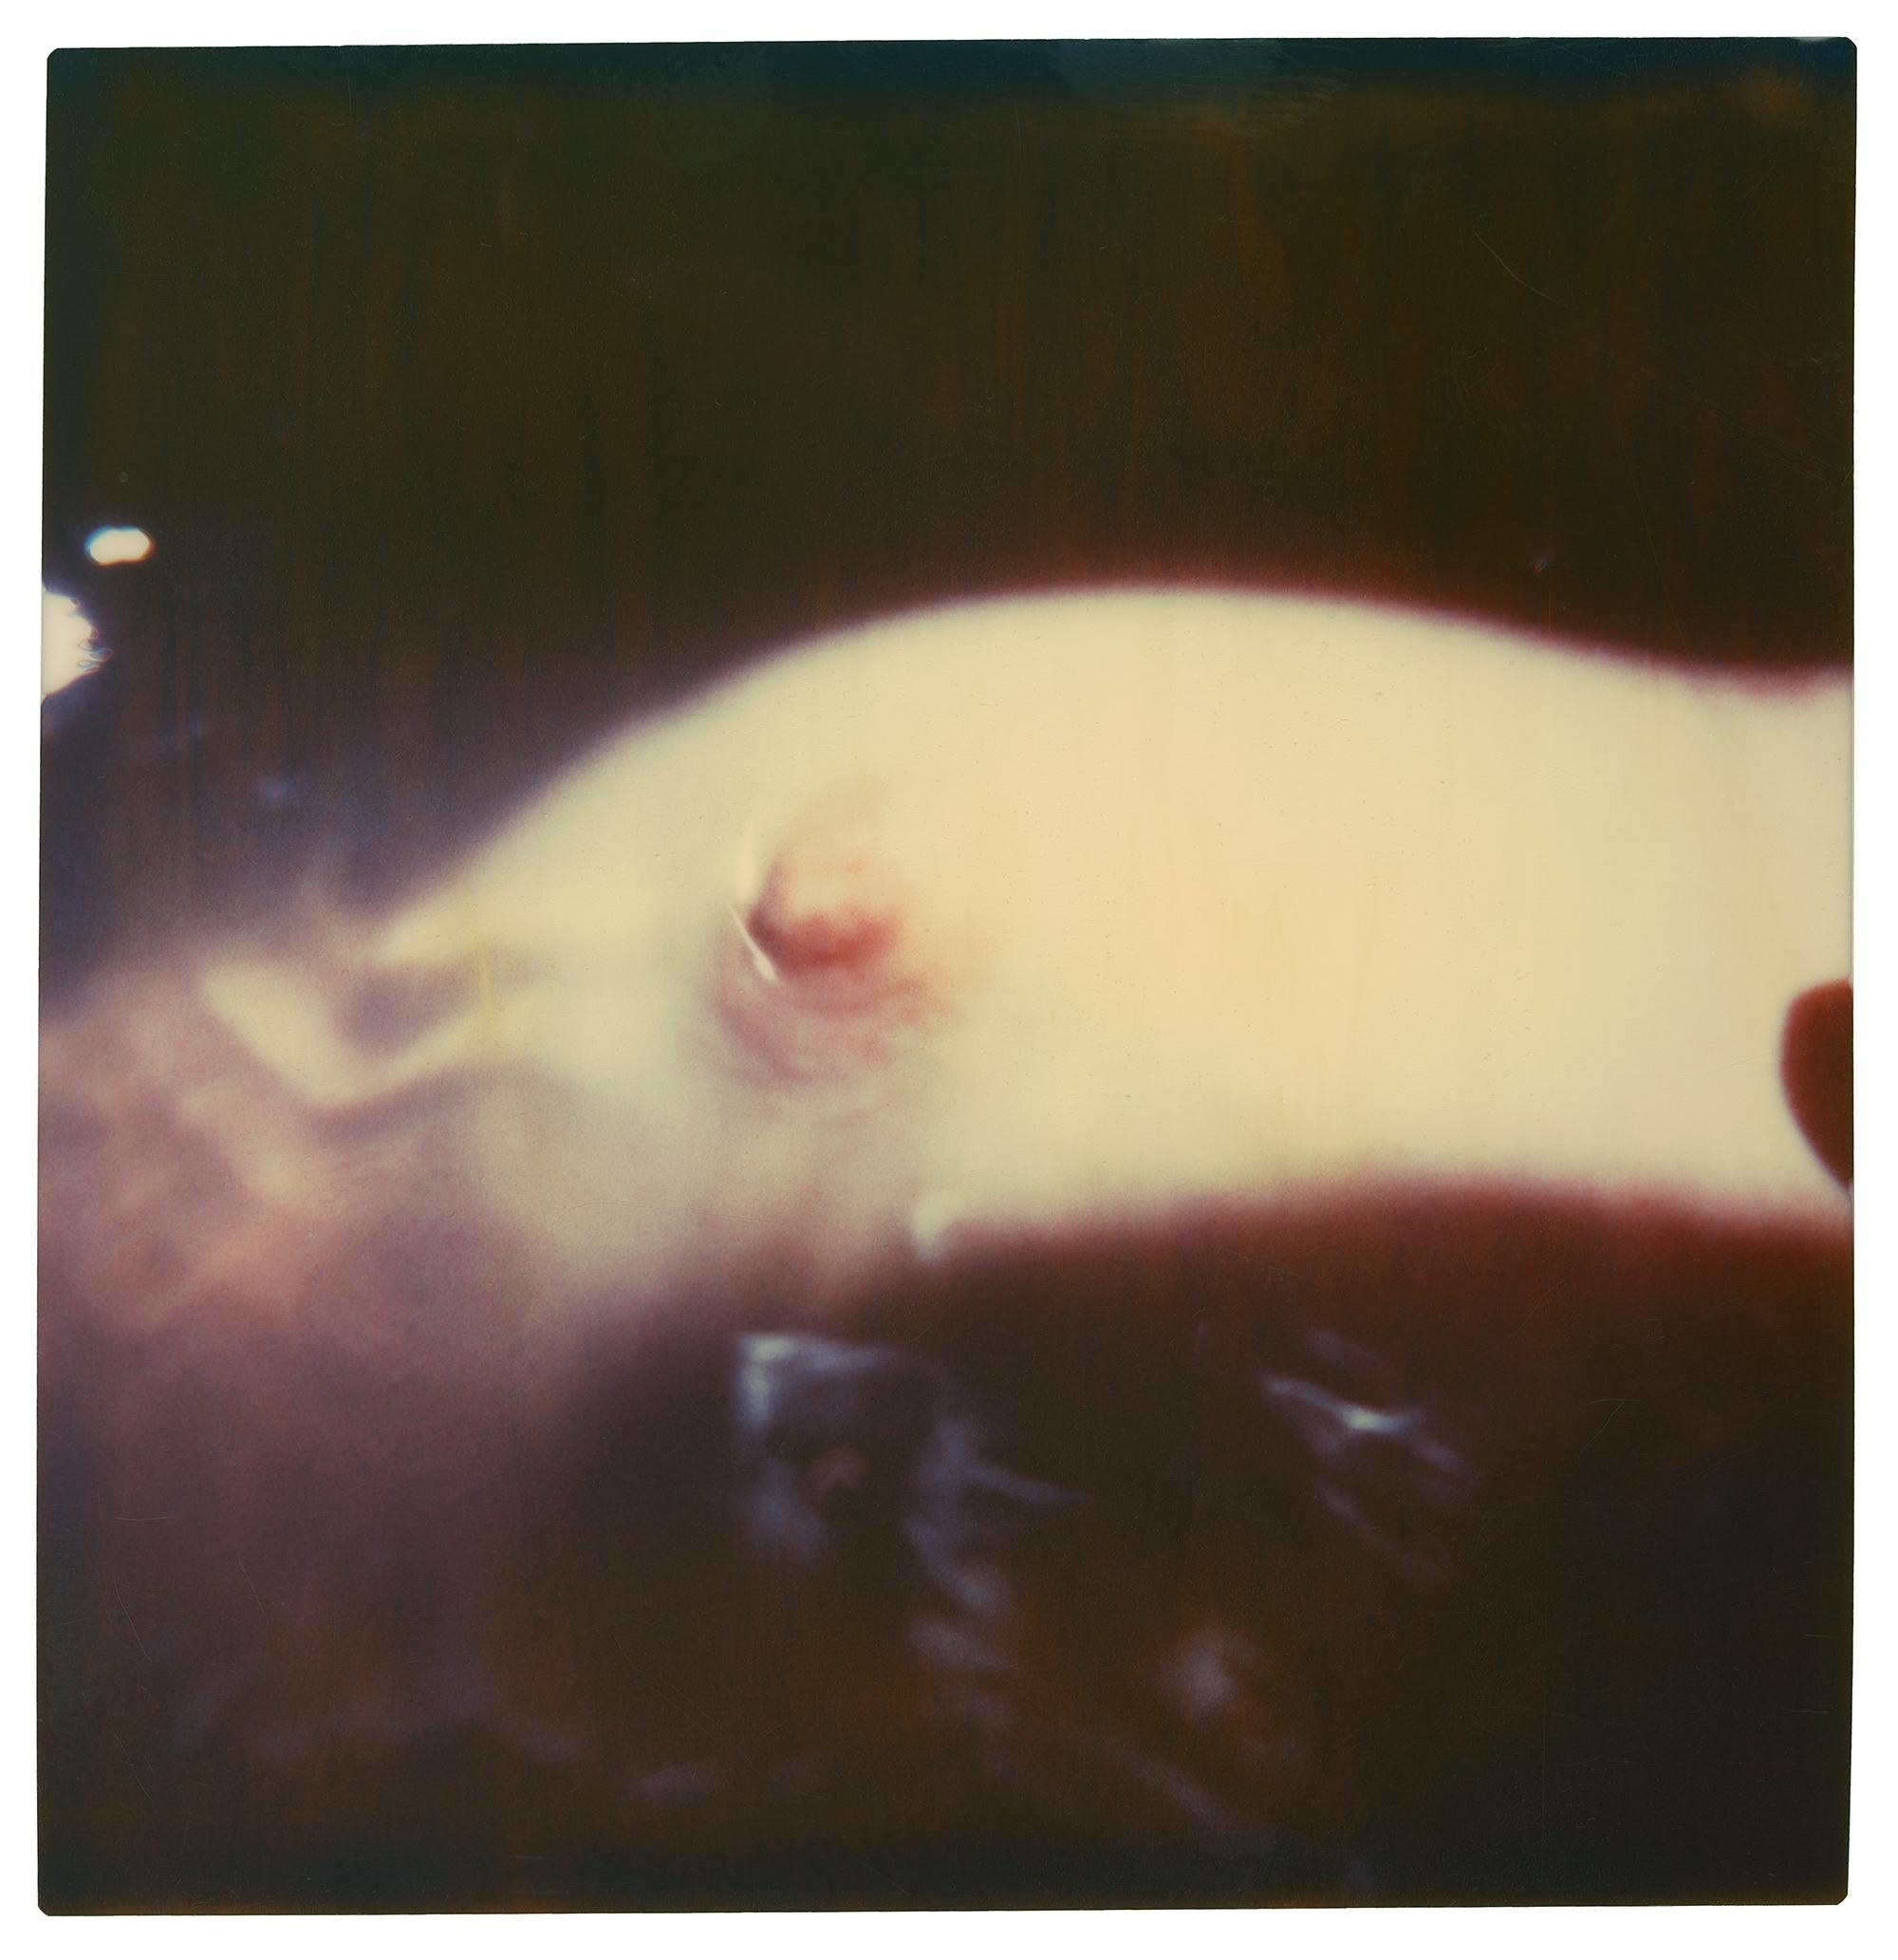 Stefanie Schneider Color Photograph - Nipple - Bathtime III (29 Palms, CA) based on a Polaroid